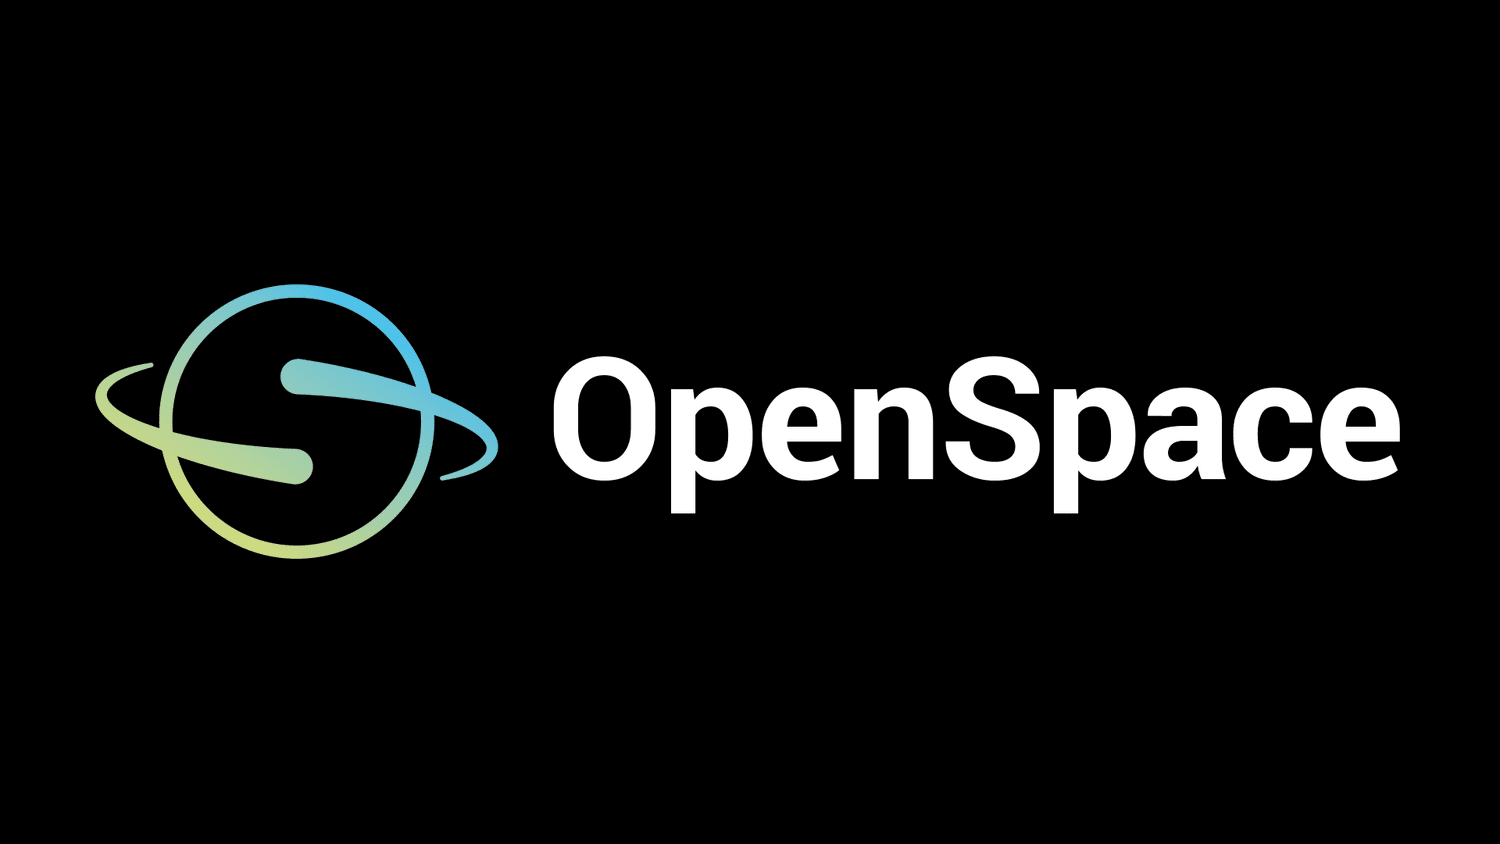 www.openspaceproject.com